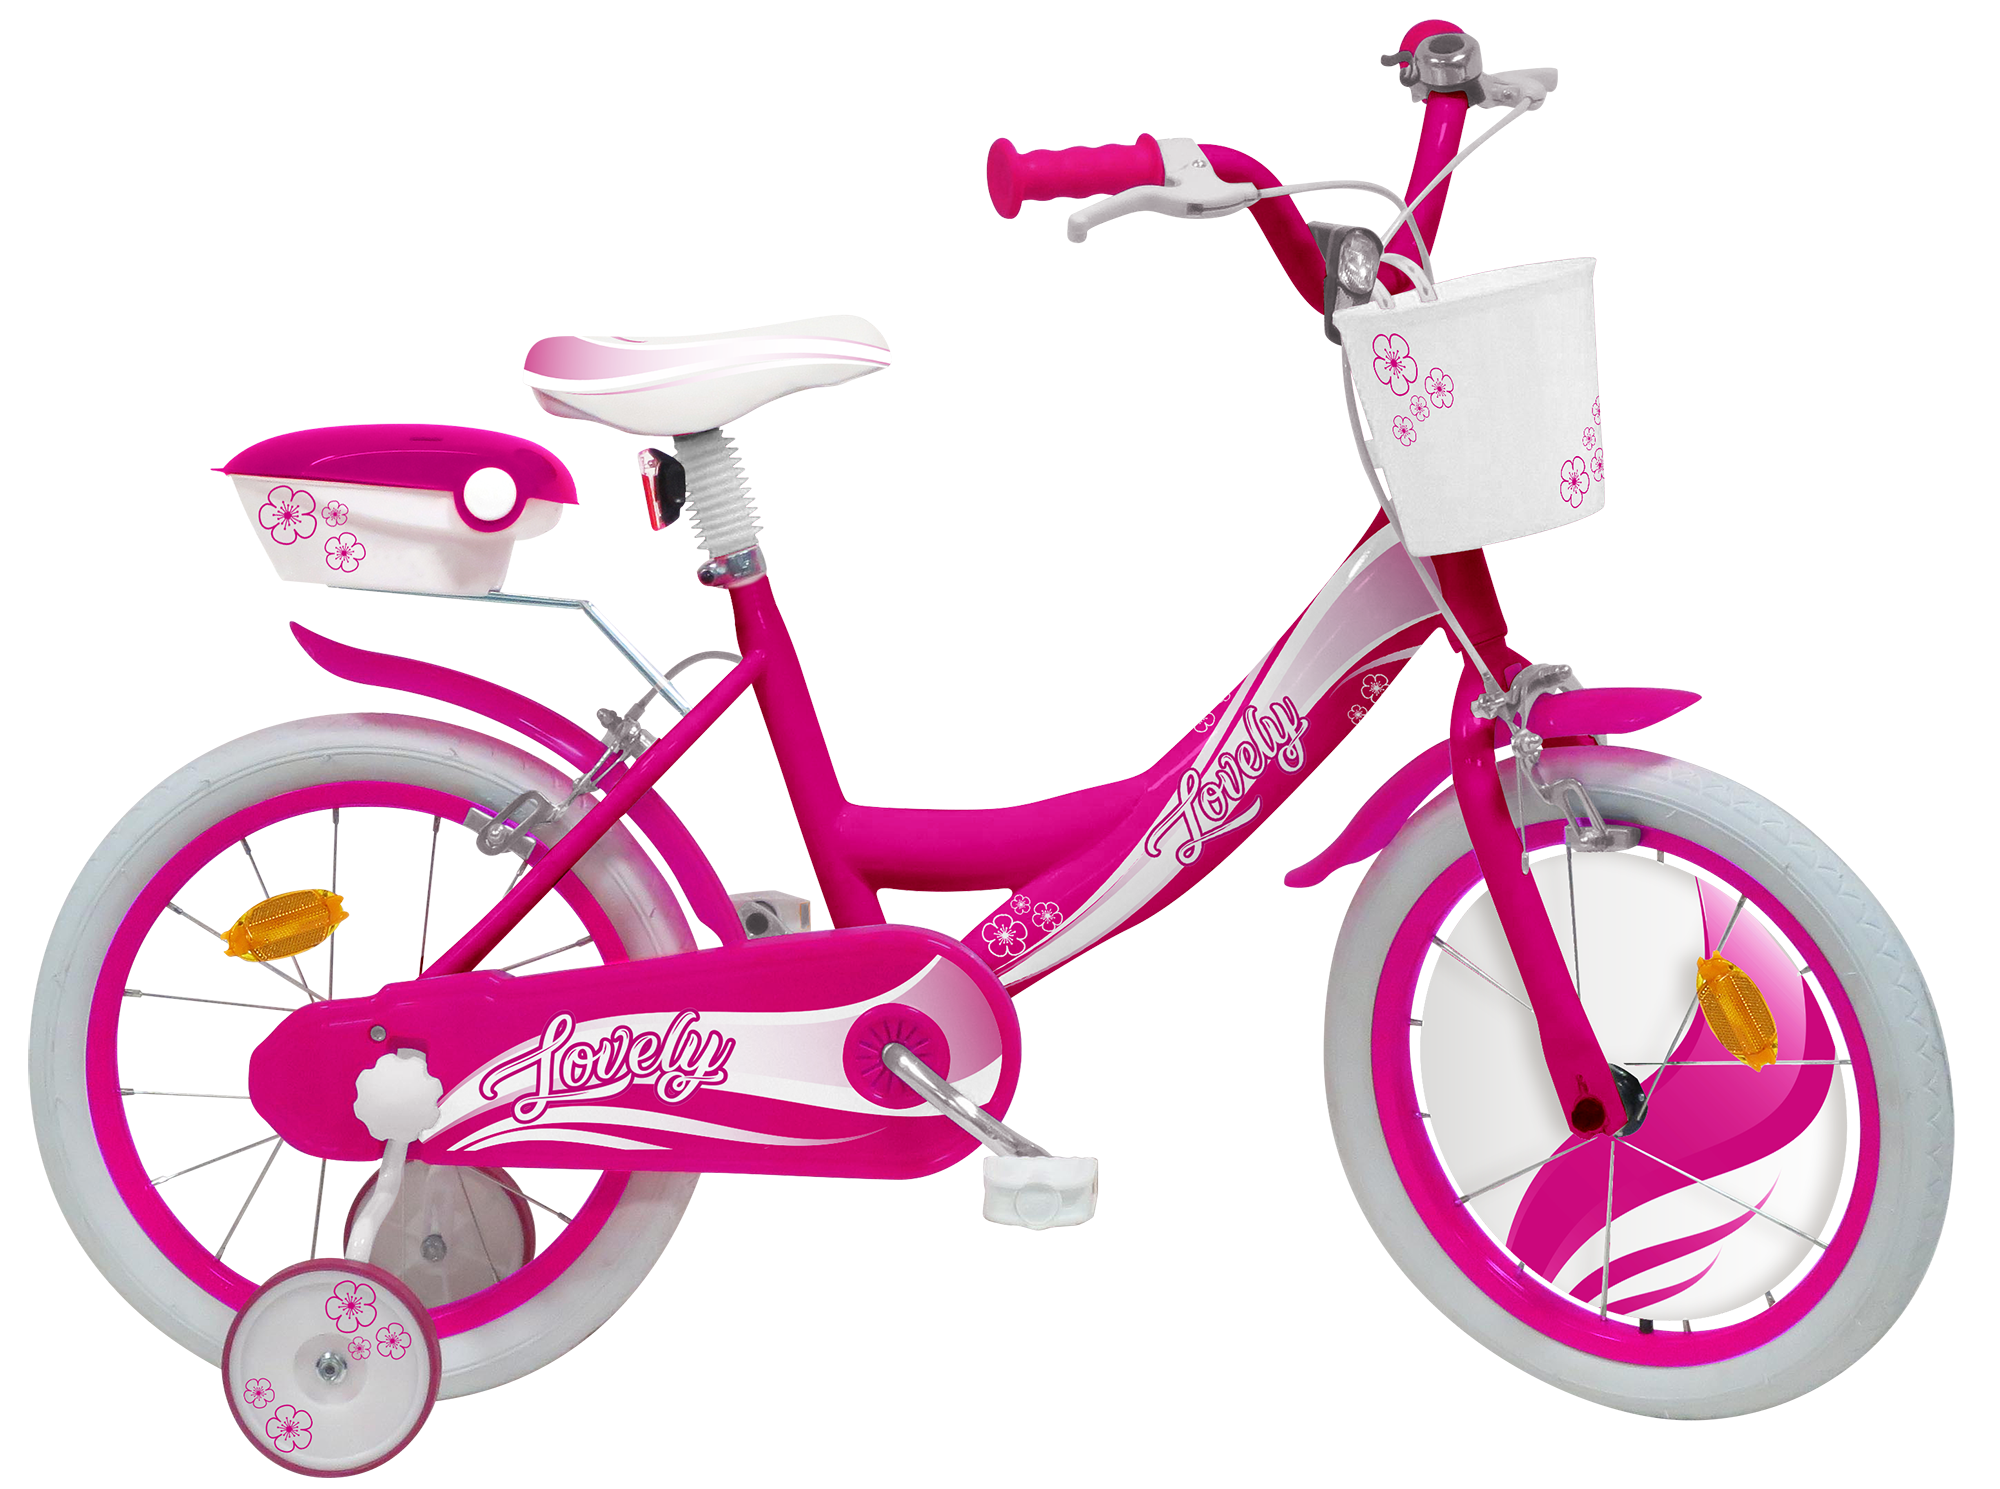 Bicicletta 16 - Fucsia - 2 freni caliper - Bauletto, cestello e disco  colorato nella ruota anteriore inclusi - adatta per bambini dai 8-12 anni -  Toys Center